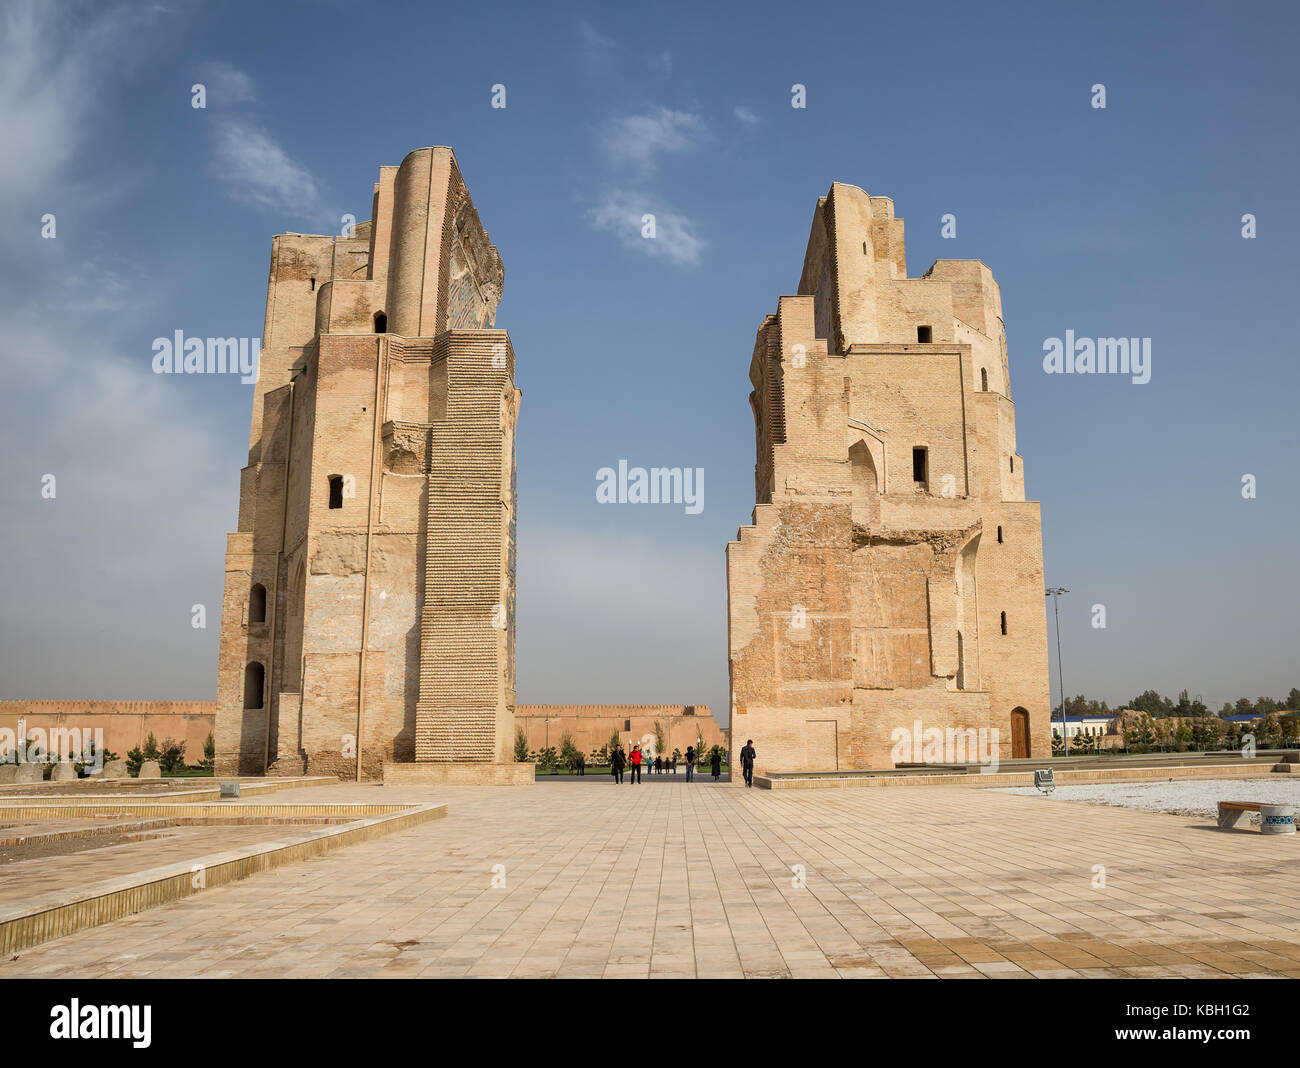 Shakhrisabz, Uzbekistan - ottobre 23, 2016: le rovine di ak-saray Palace è un grand residence di Timur nella sua città natale di shakhrisabz Foto Stock